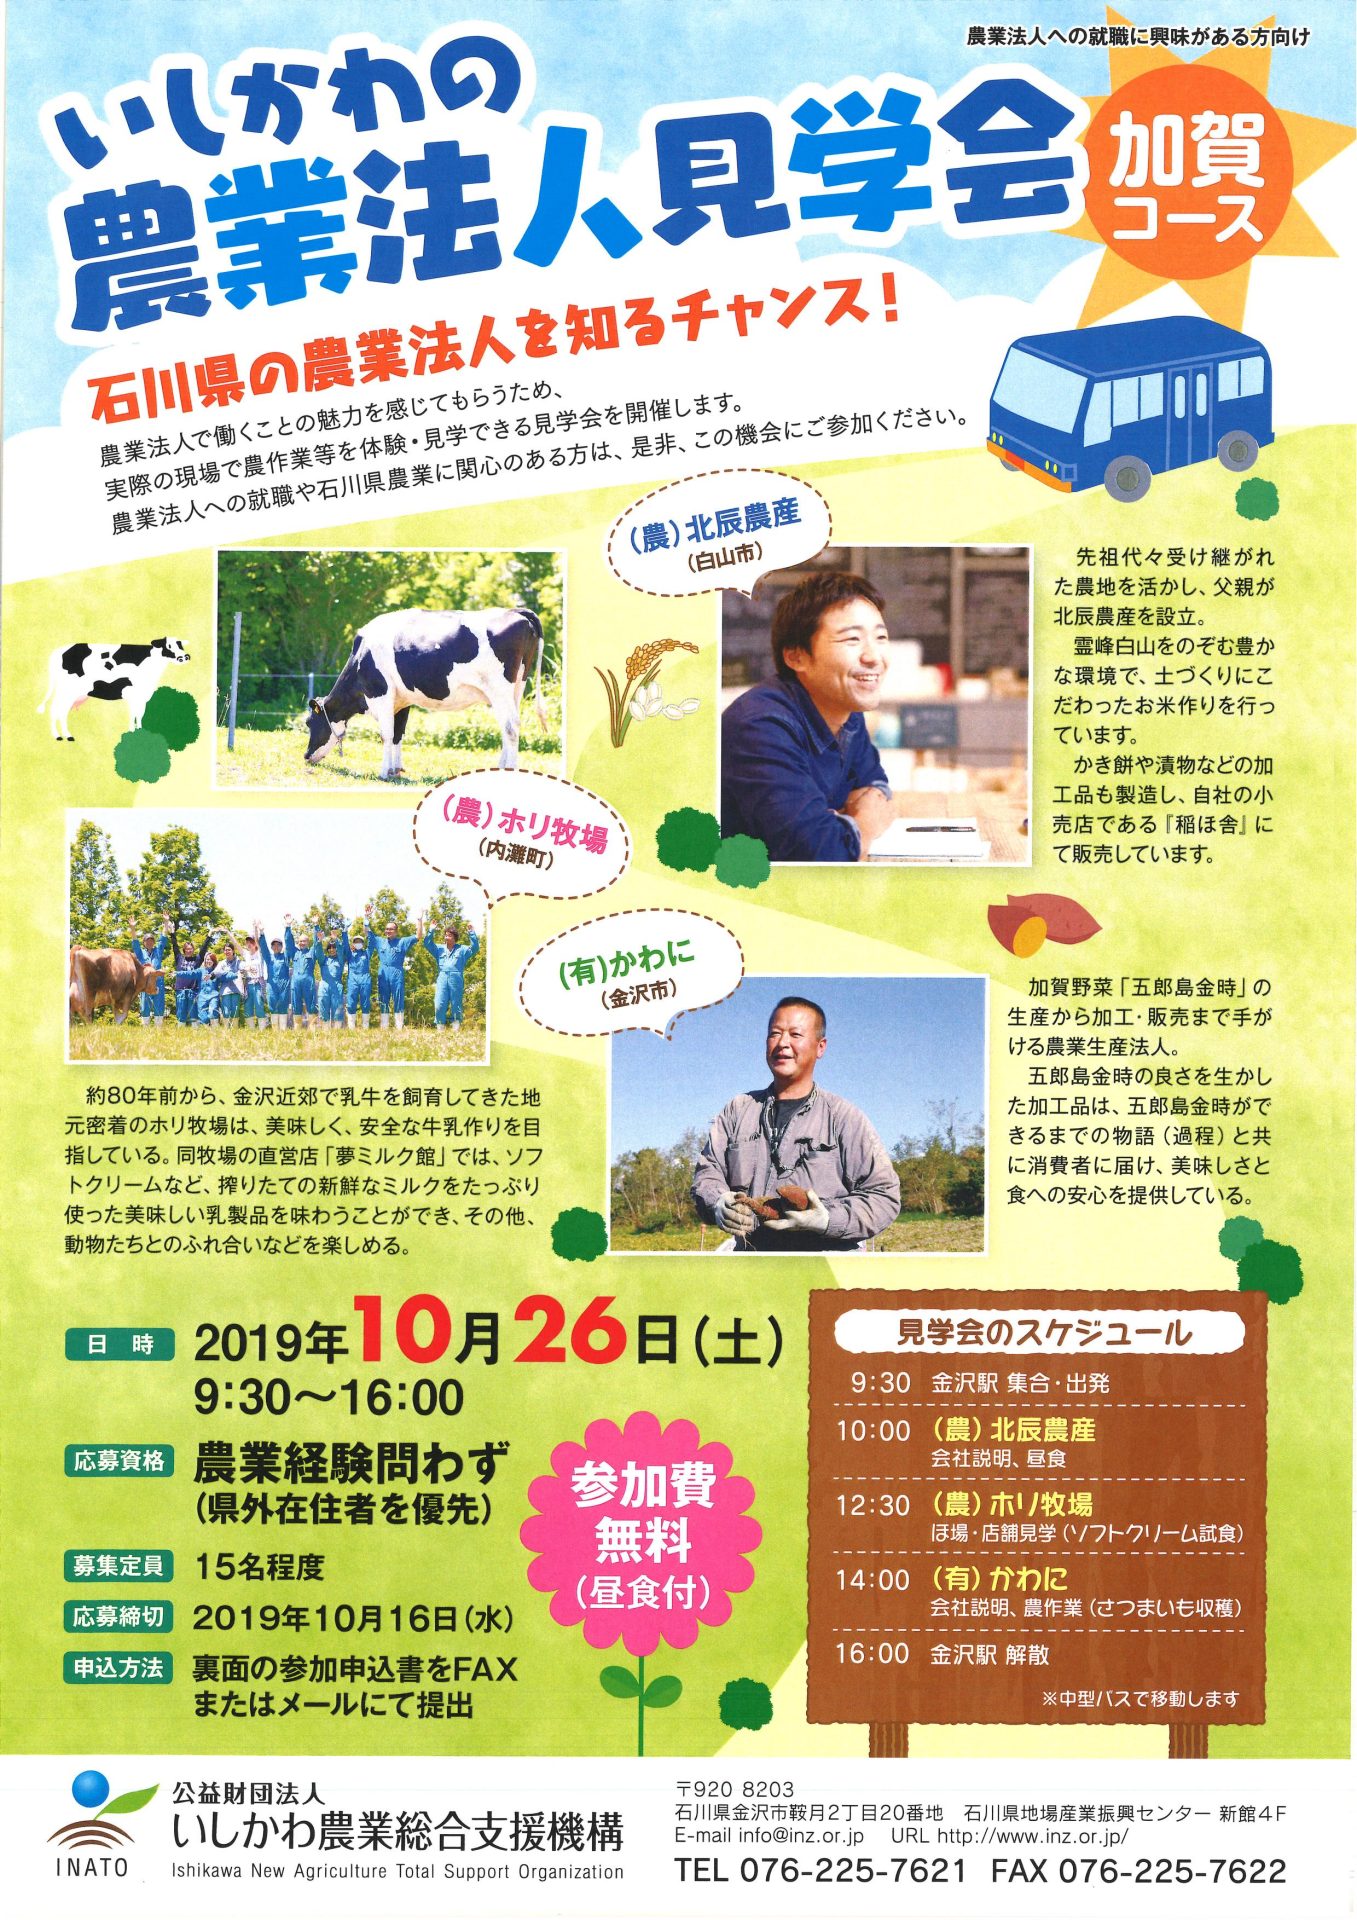 いしかわの農業法人見学会【加賀コース】 | 移住関連イベント情報